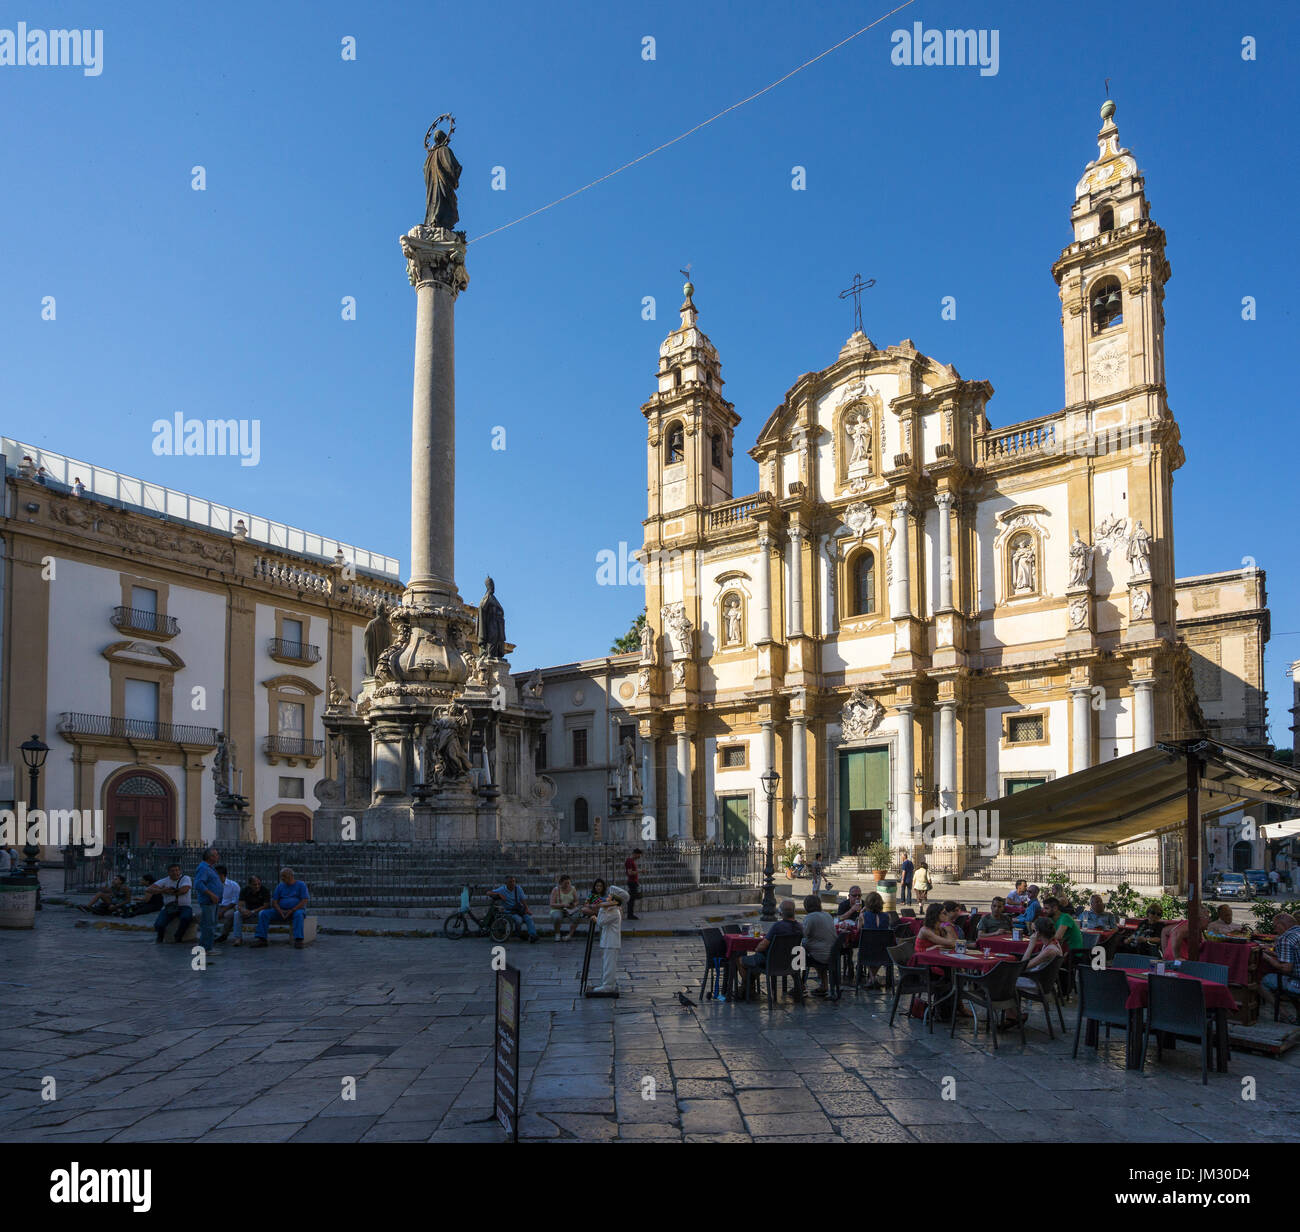 San Domenico church in the Piazza de San domenico, Central Palermo. Stock Photo